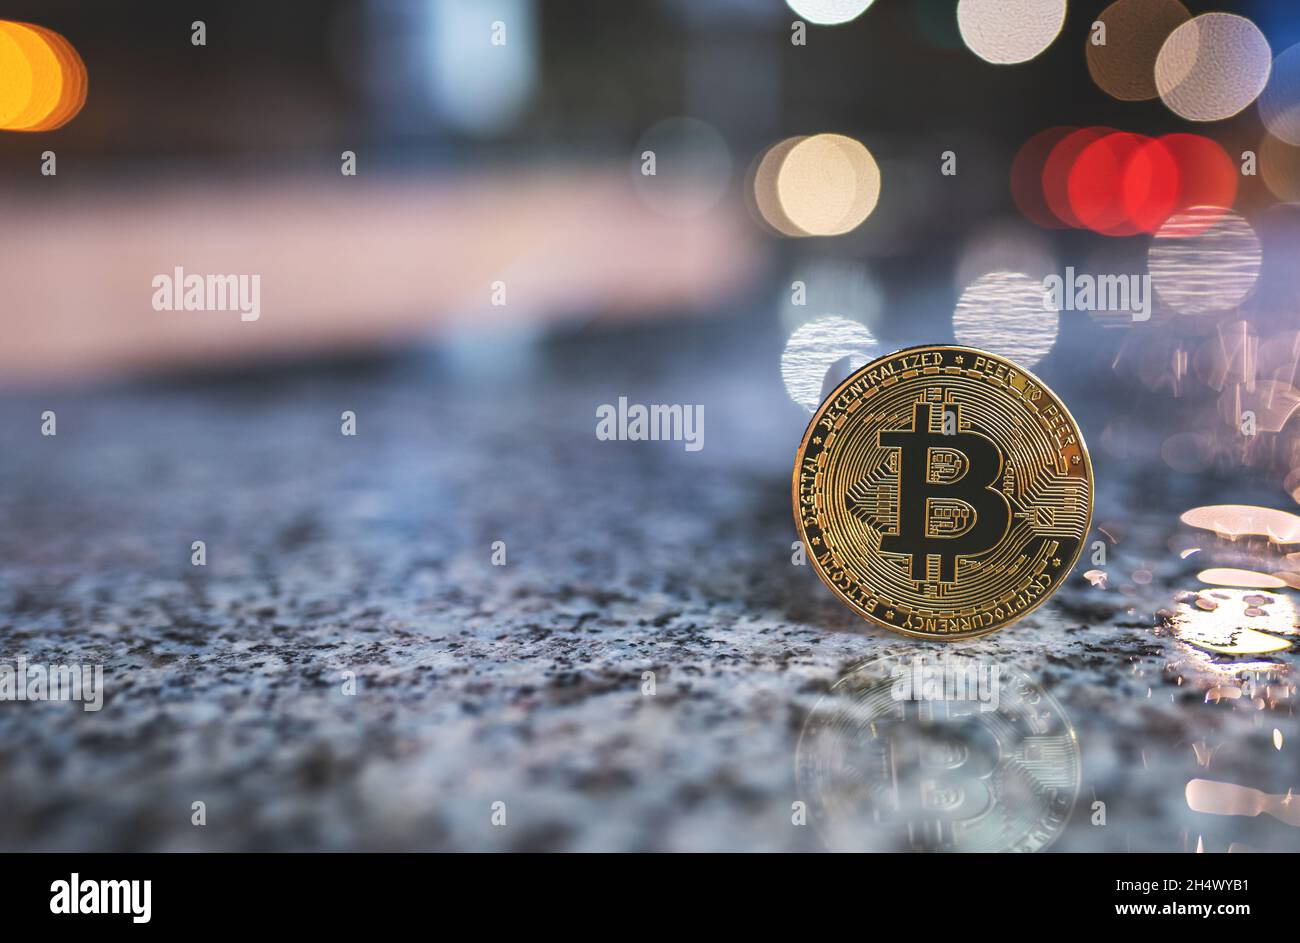 Bitcoin Krypto-Münze mit Kopieplatz, draußen stehend mit verschwommenem Bokeh Nacht Stadt Lichter Hintergrund und Reflexion auf nasser Oberfläche. Einzelnes BTC-Kryptowährungs-Token-Banner, weicher Fokus Stockfoto